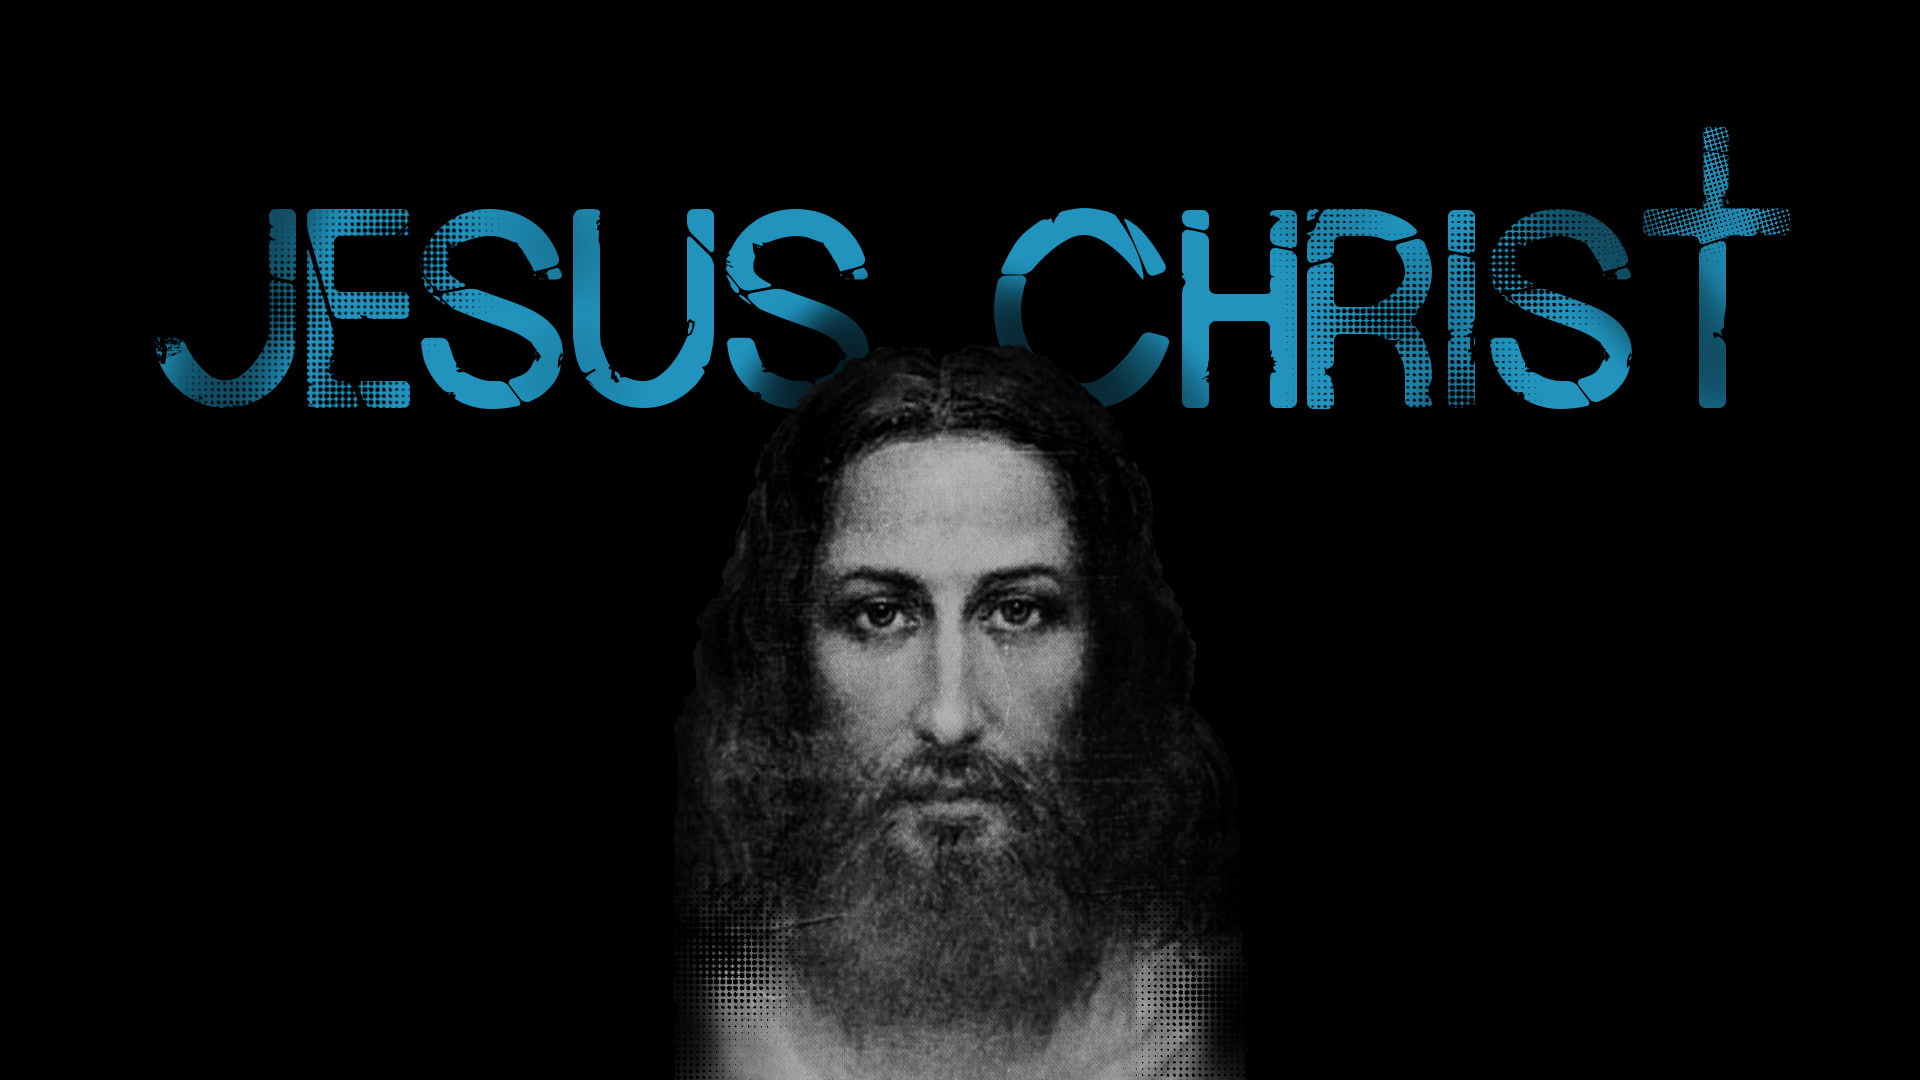 Jesus Christ, face, black, Shroud, cross, artwork, religious